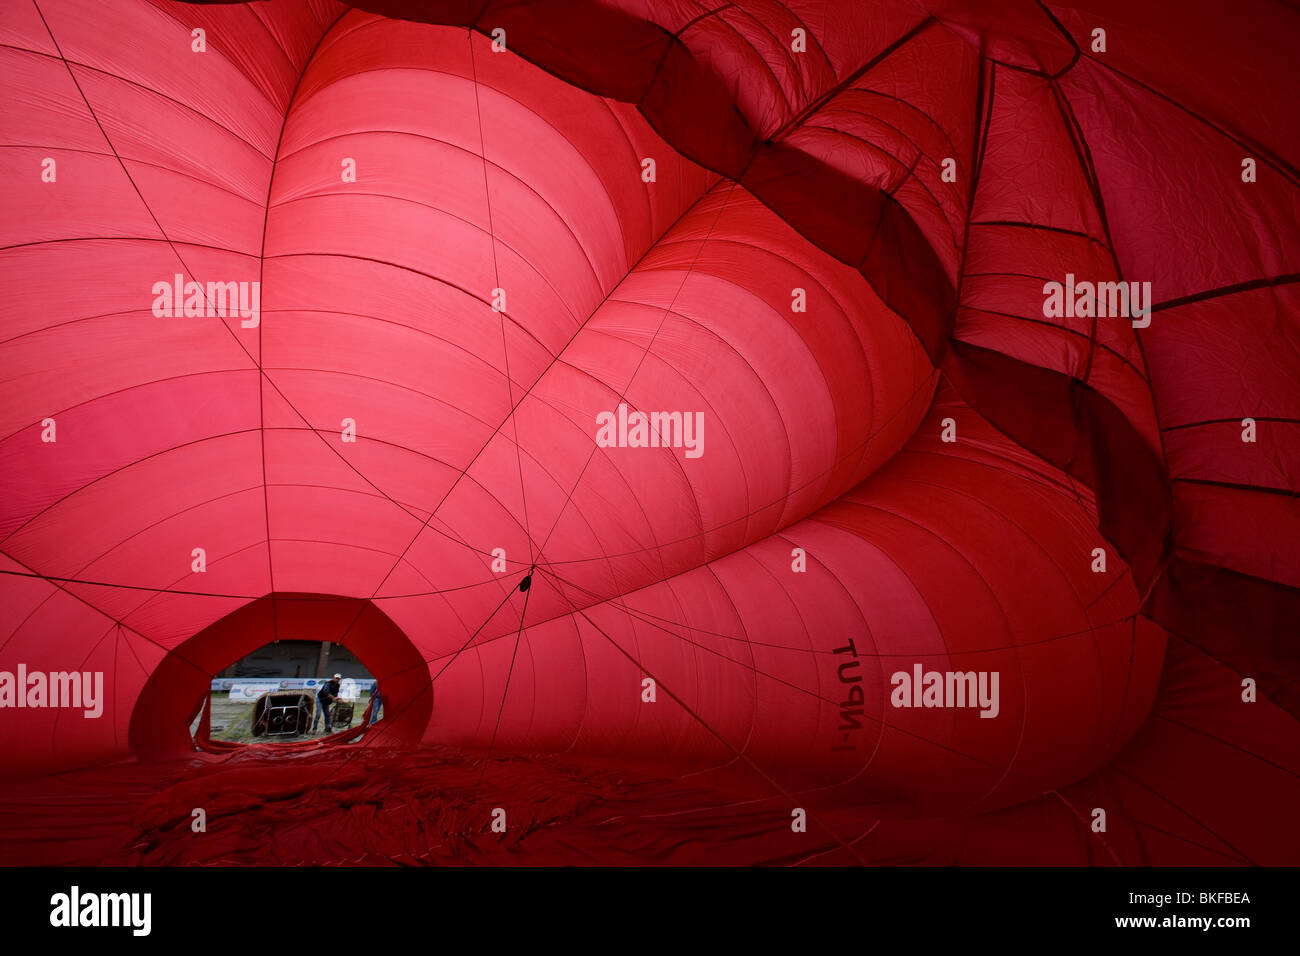 Ballon à air chaud, au cours de l'inflation Banque D'Images